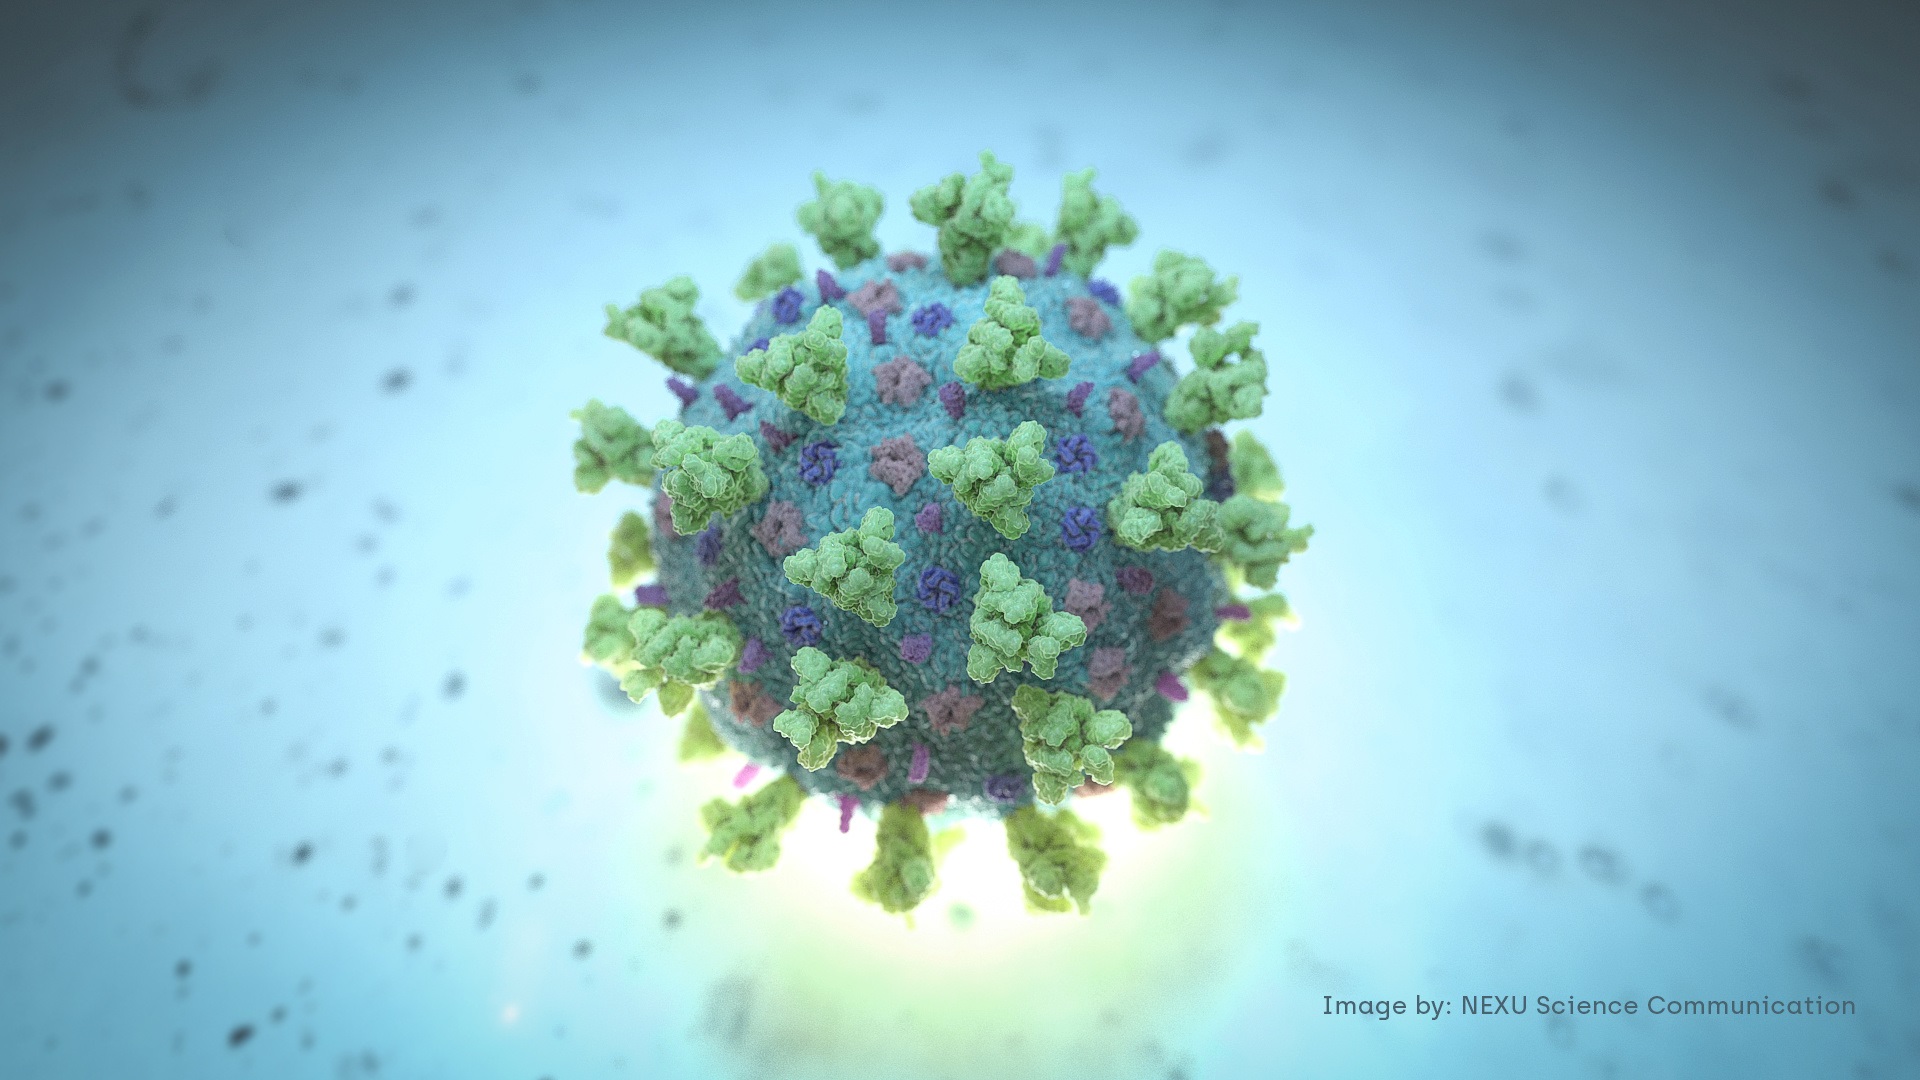 نموذجًا ممثِّلًا هيكليًا لفيروس COVID-19 ، والمعروف باسم فيروس كورونا (رويترز)